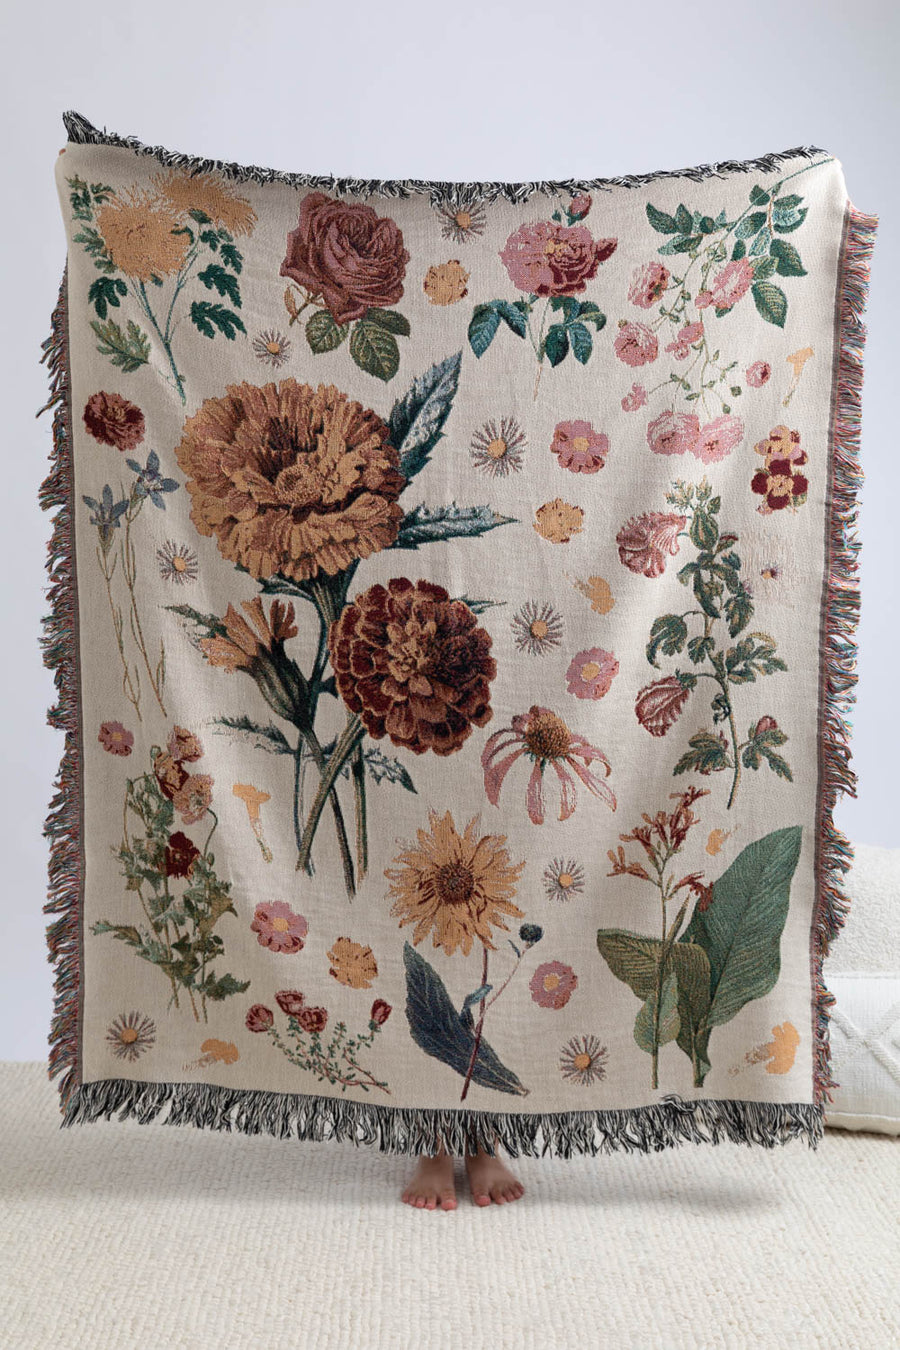 Vintage Floral Throw Blanket 50x60